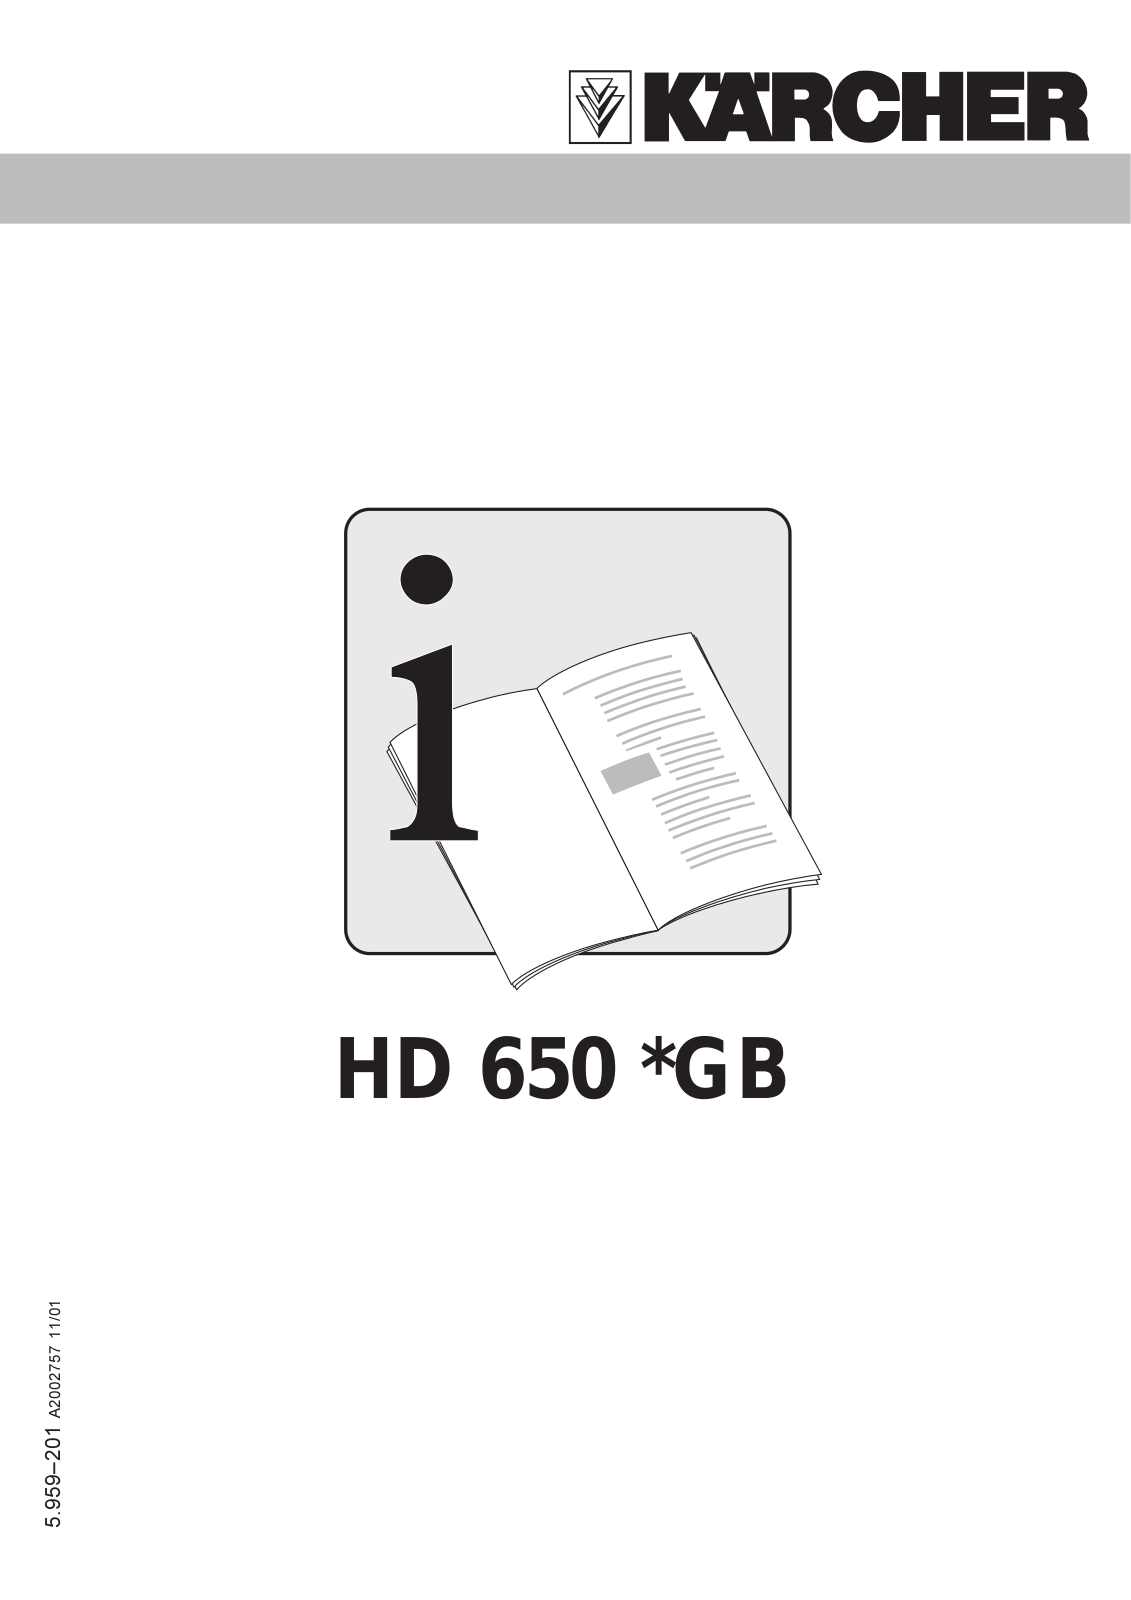 Karcher HD 650 GB User Manual